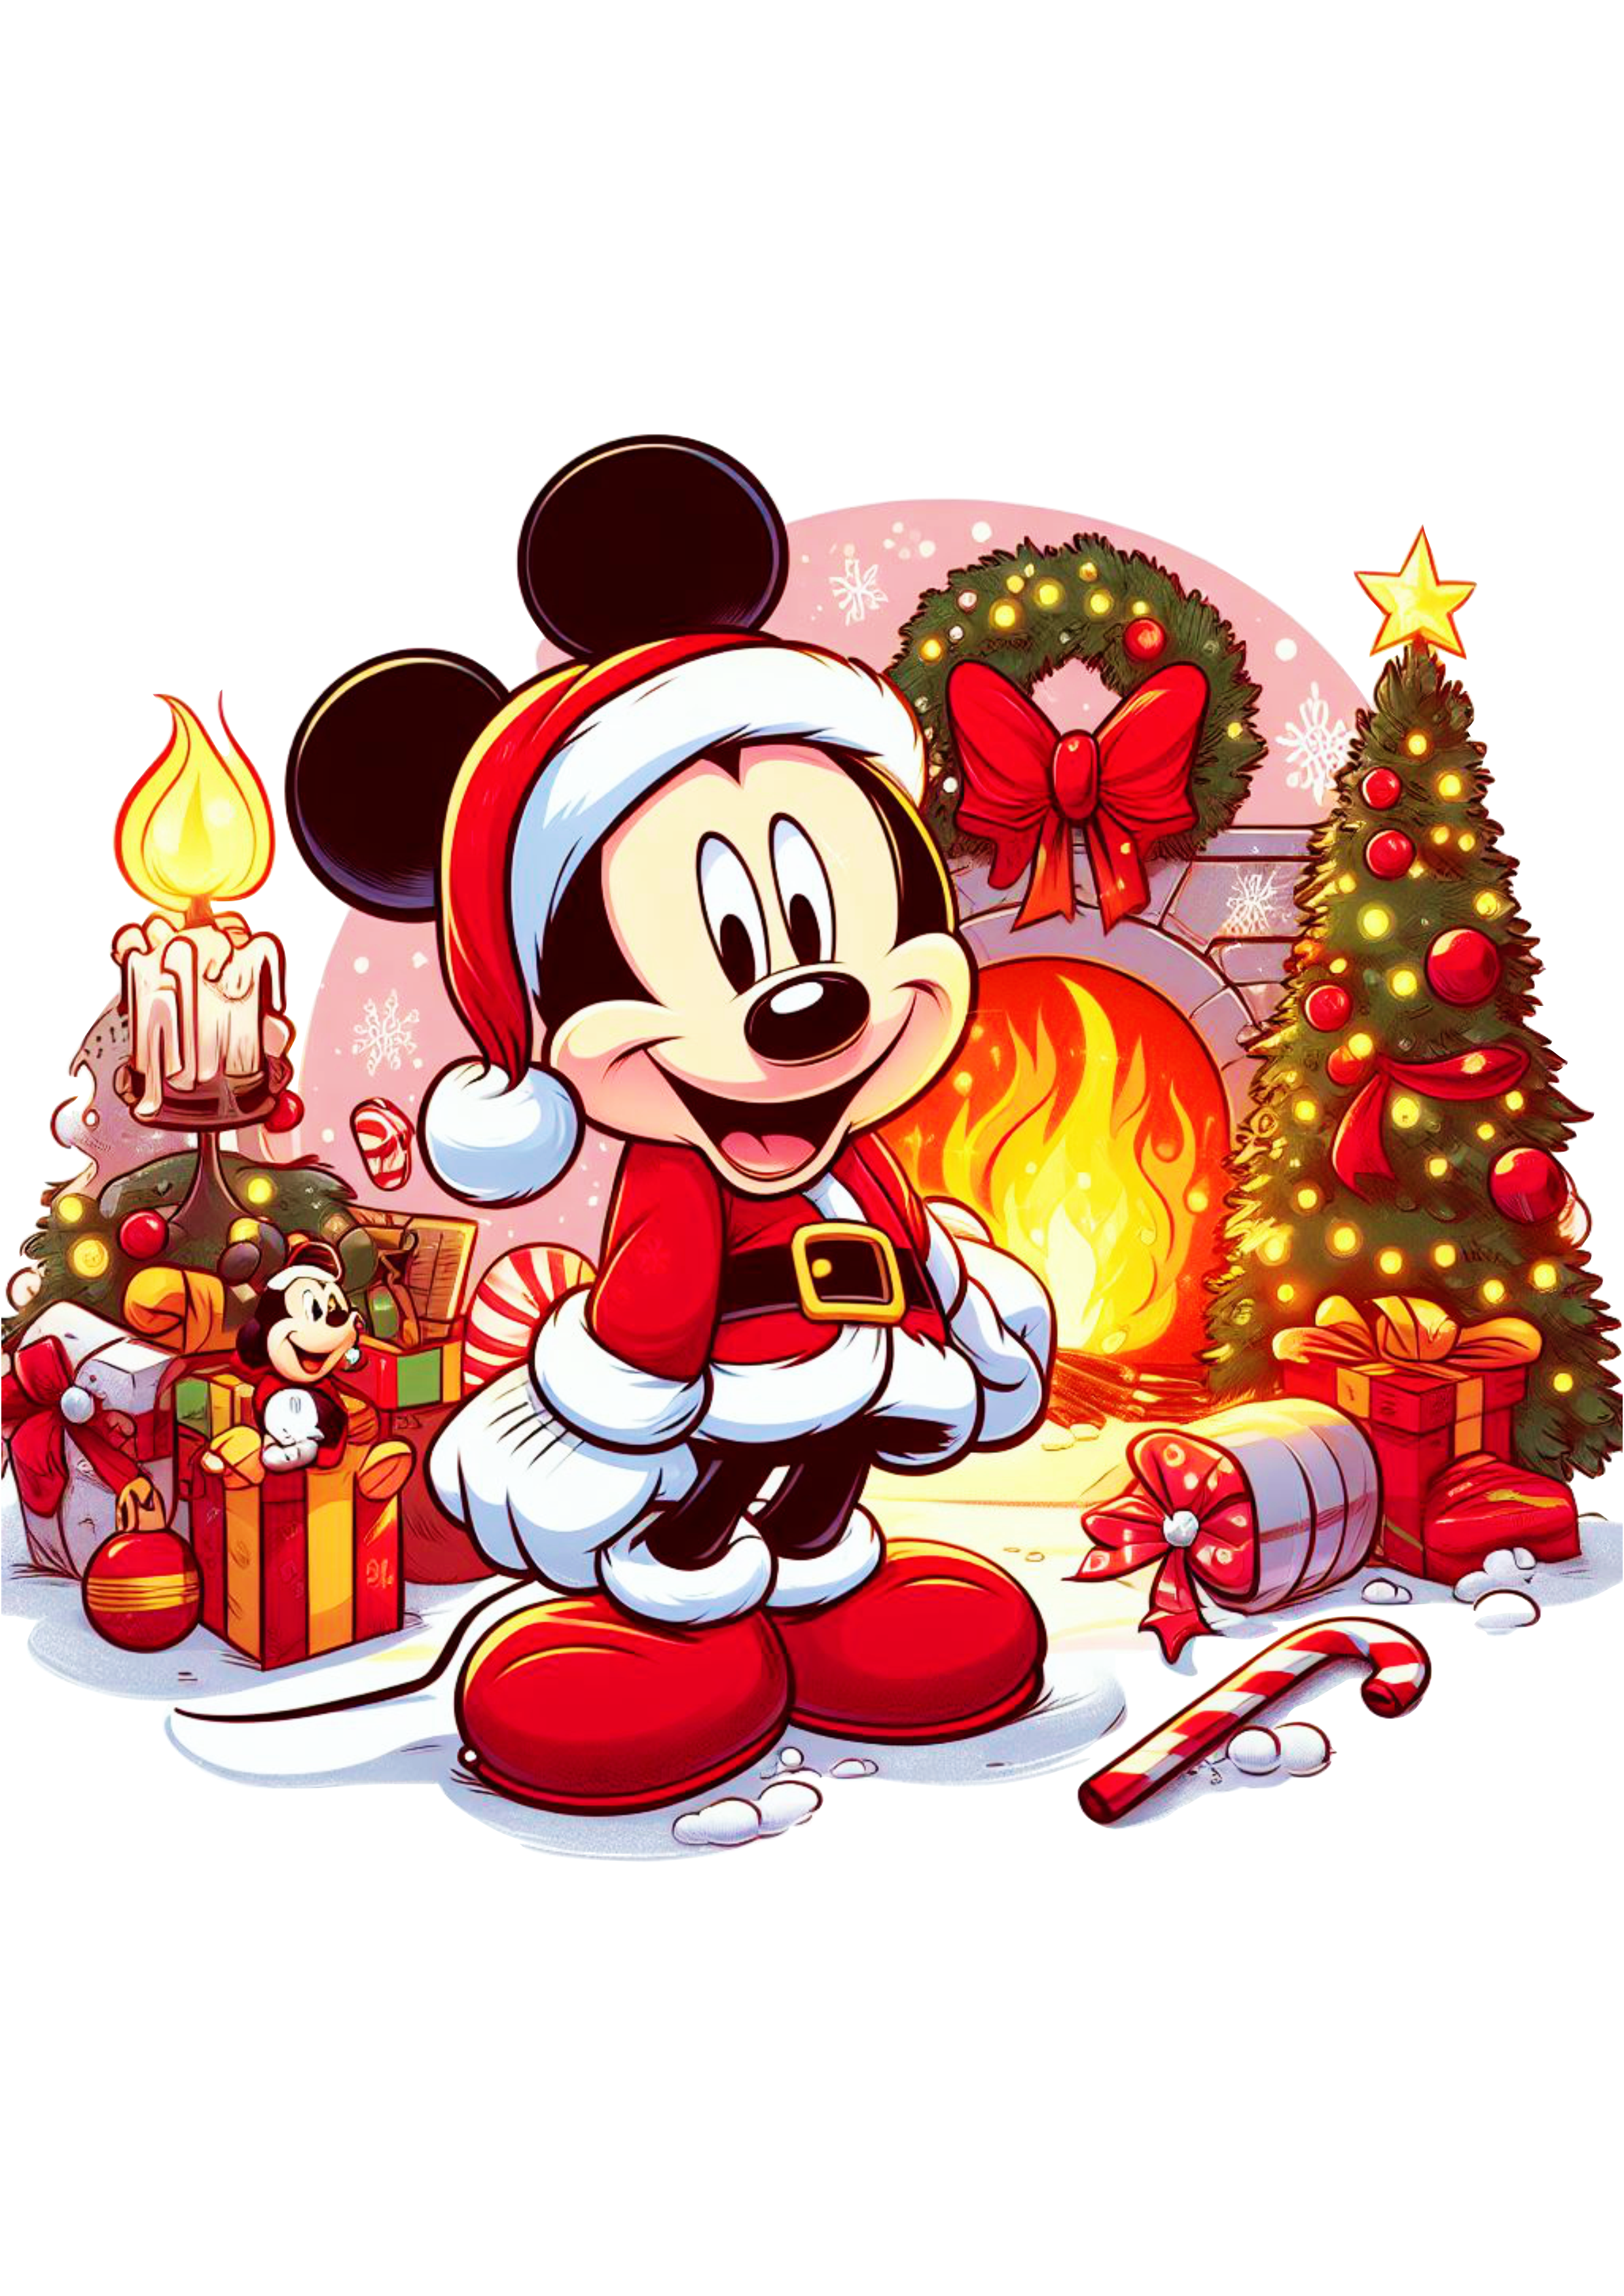 Decoração de natal imagem fofinha do Mickey árvore de natal chaminé guirlanda e presentes png